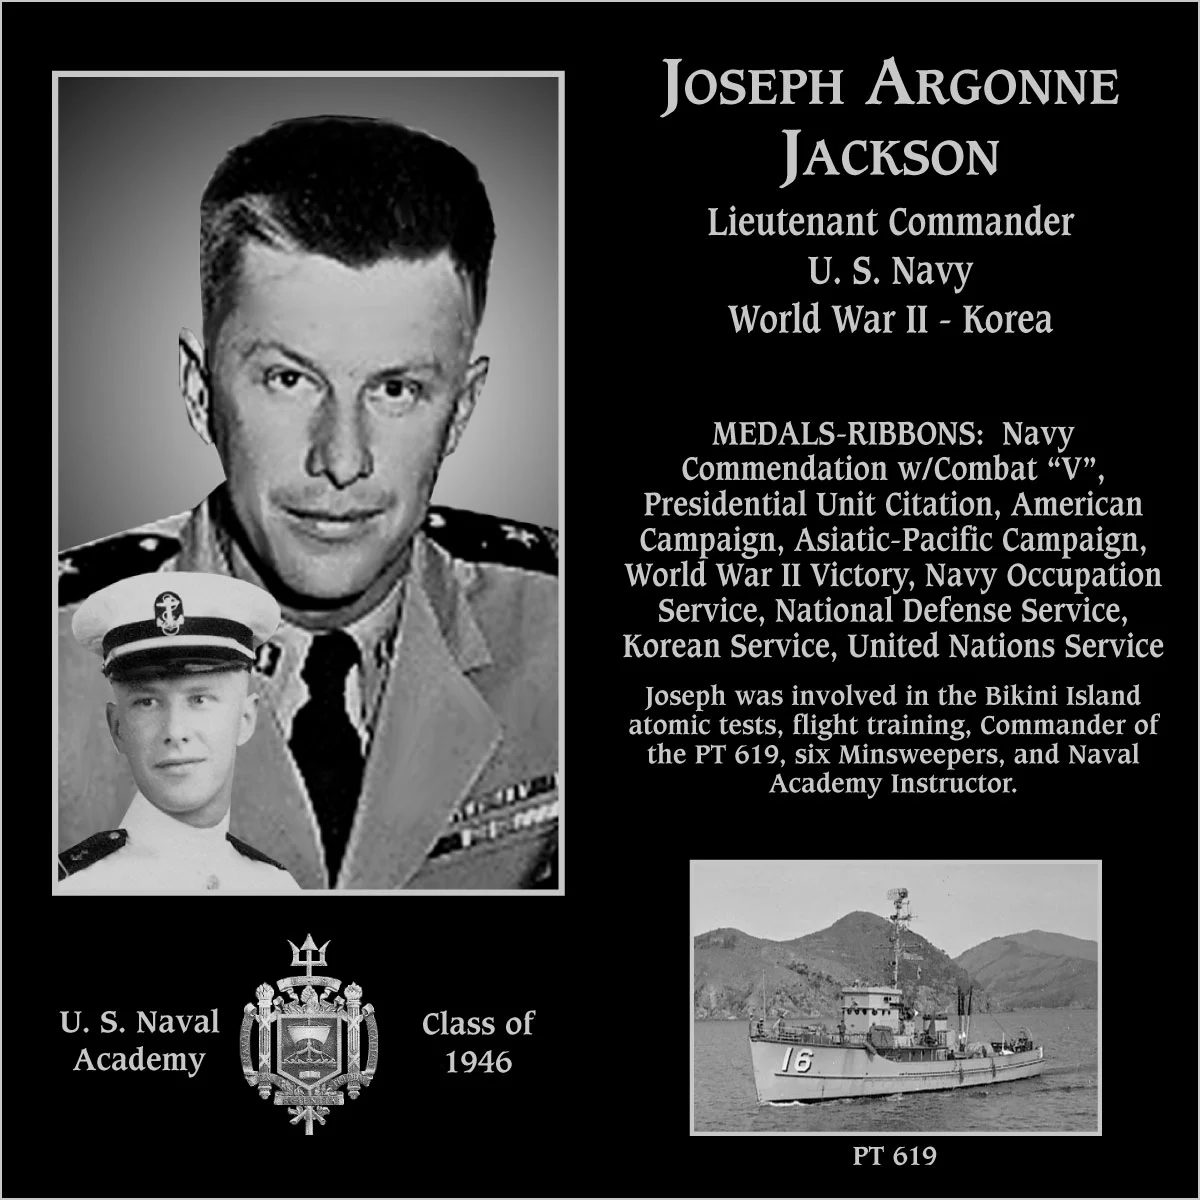 Joseph Argonne Jackson